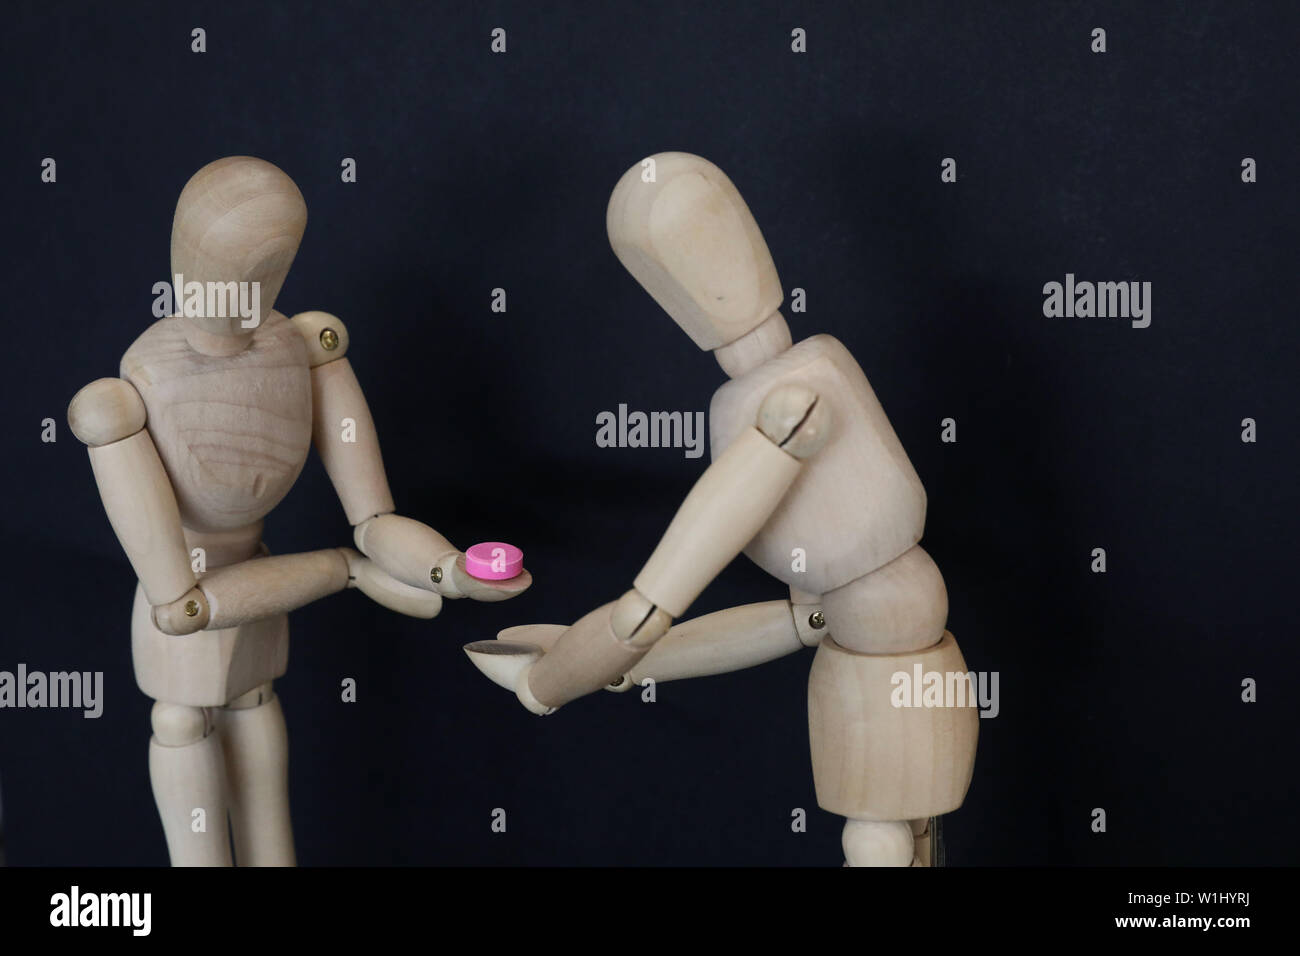 2 manichini in legno uno che accetta una pillola rosa tablet farmaco dall'altro. Prescrizione illegale di droga scelta prendendo la decisione il concetto di istruzione di farmaco awa Foto Stock